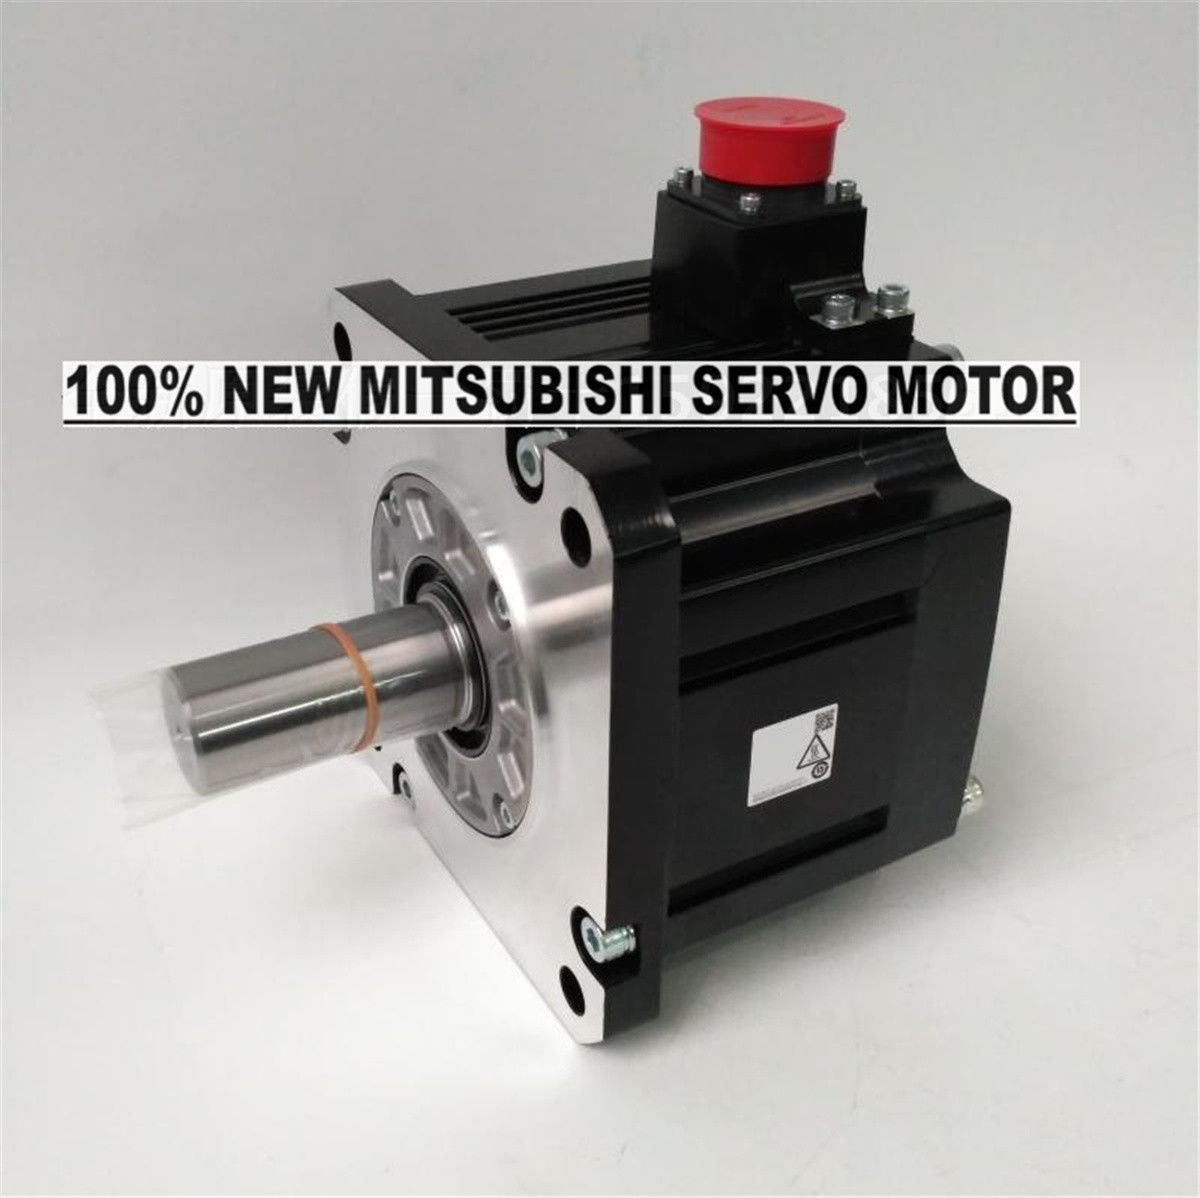 Brand NEW Mitsubishi Servo Motor HG-SN302J-S100 in box HGSN302JS100 - Click Image to Close